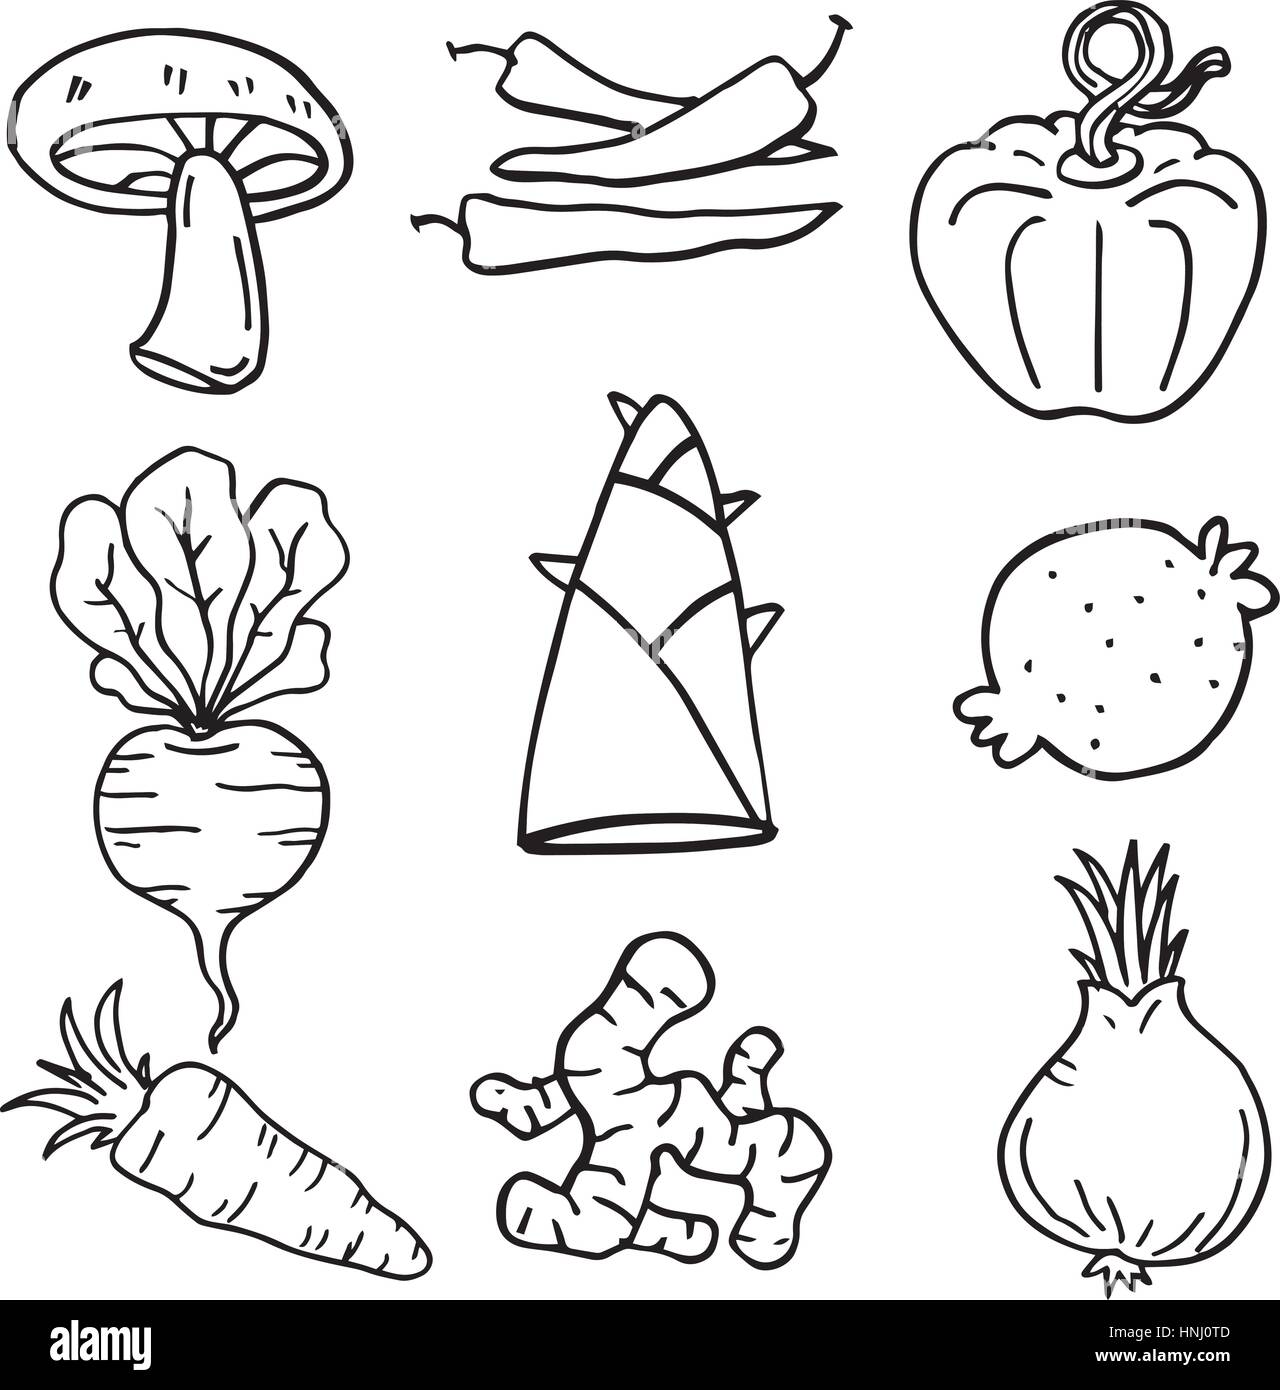 Doodle Gemüse Vektor Kunst Abbildung Hand zeichnen Stock-Vektorgrafik -  Alamy